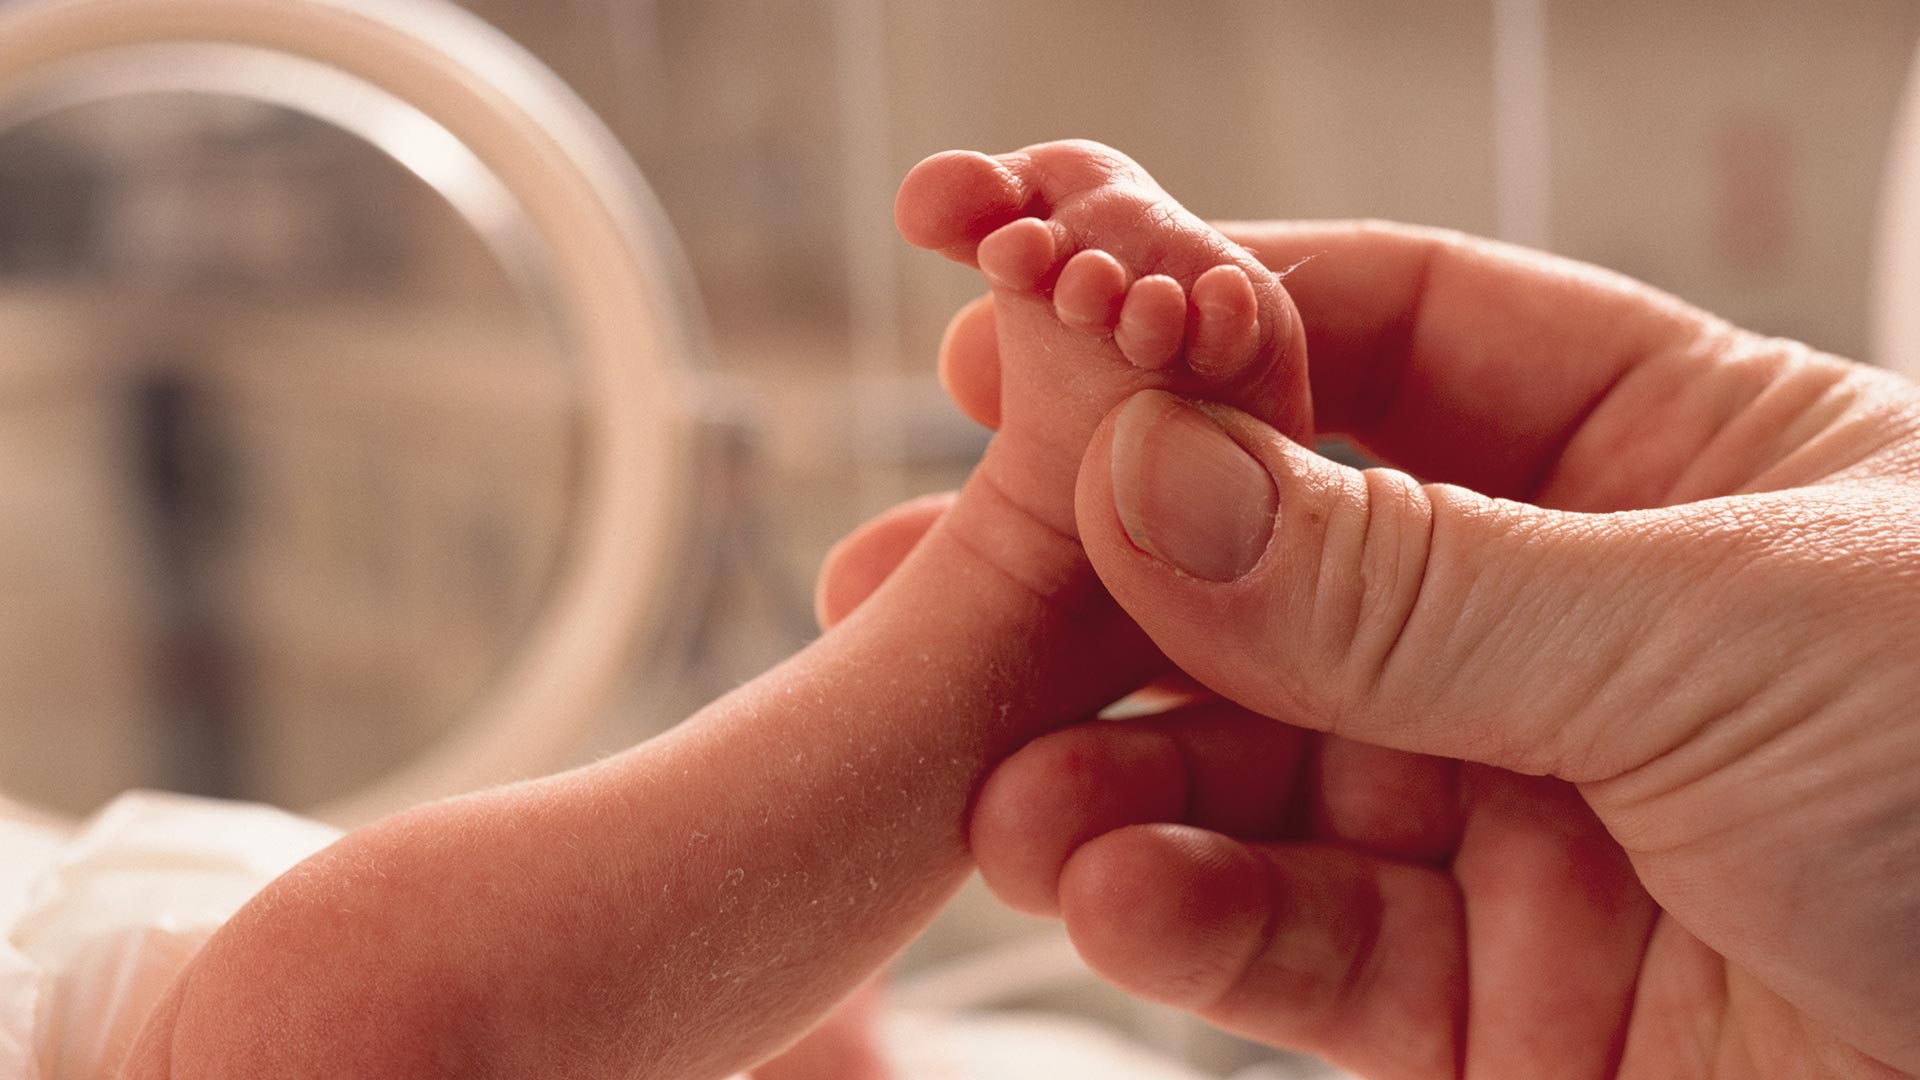 Un análisis comparativo realizado por expertos de la Universidad de Stanford indicó que los bebés nacidos de padres de 45 años o más, tenían un 14% más de posibilidades de nacer prematuros
(Gettyimages)